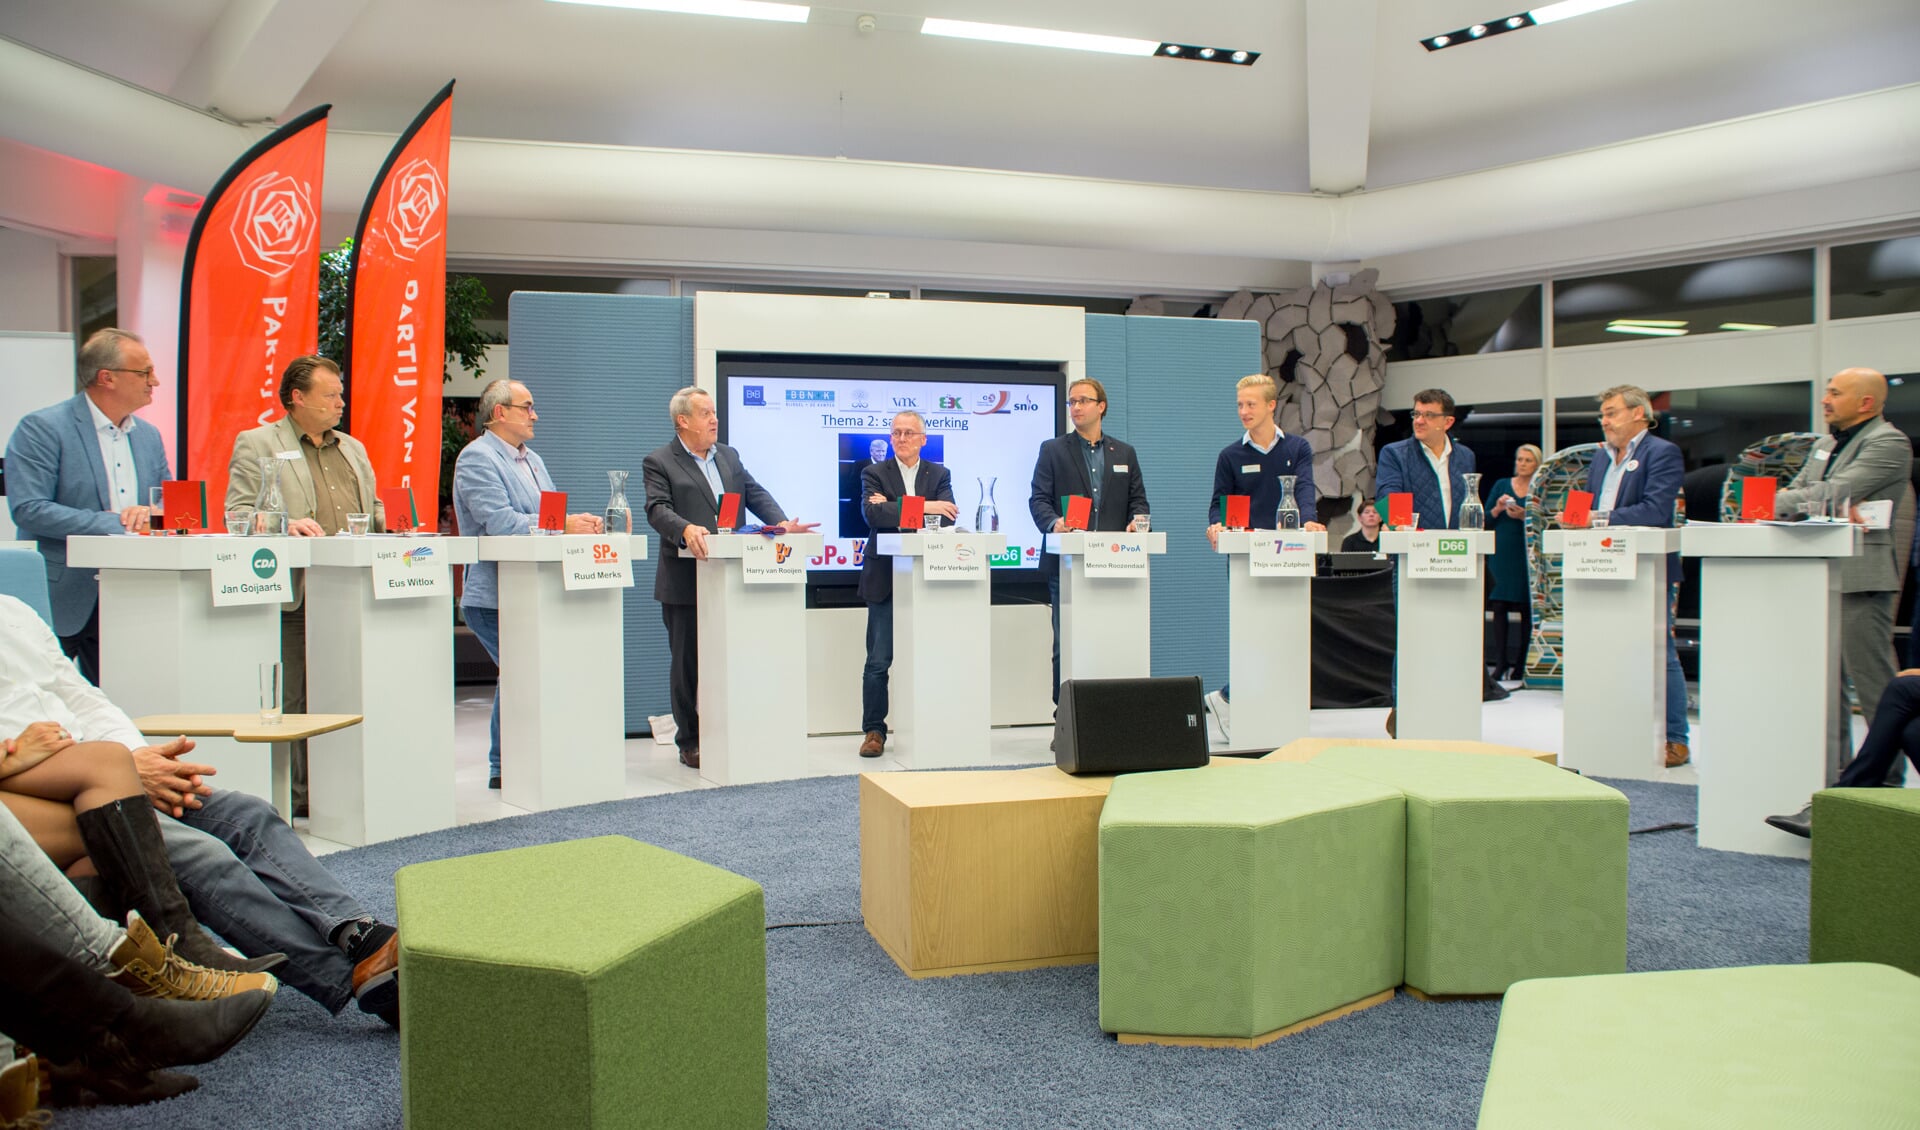 Lijsttrekkers in debat (foto's Margot van Kleef).